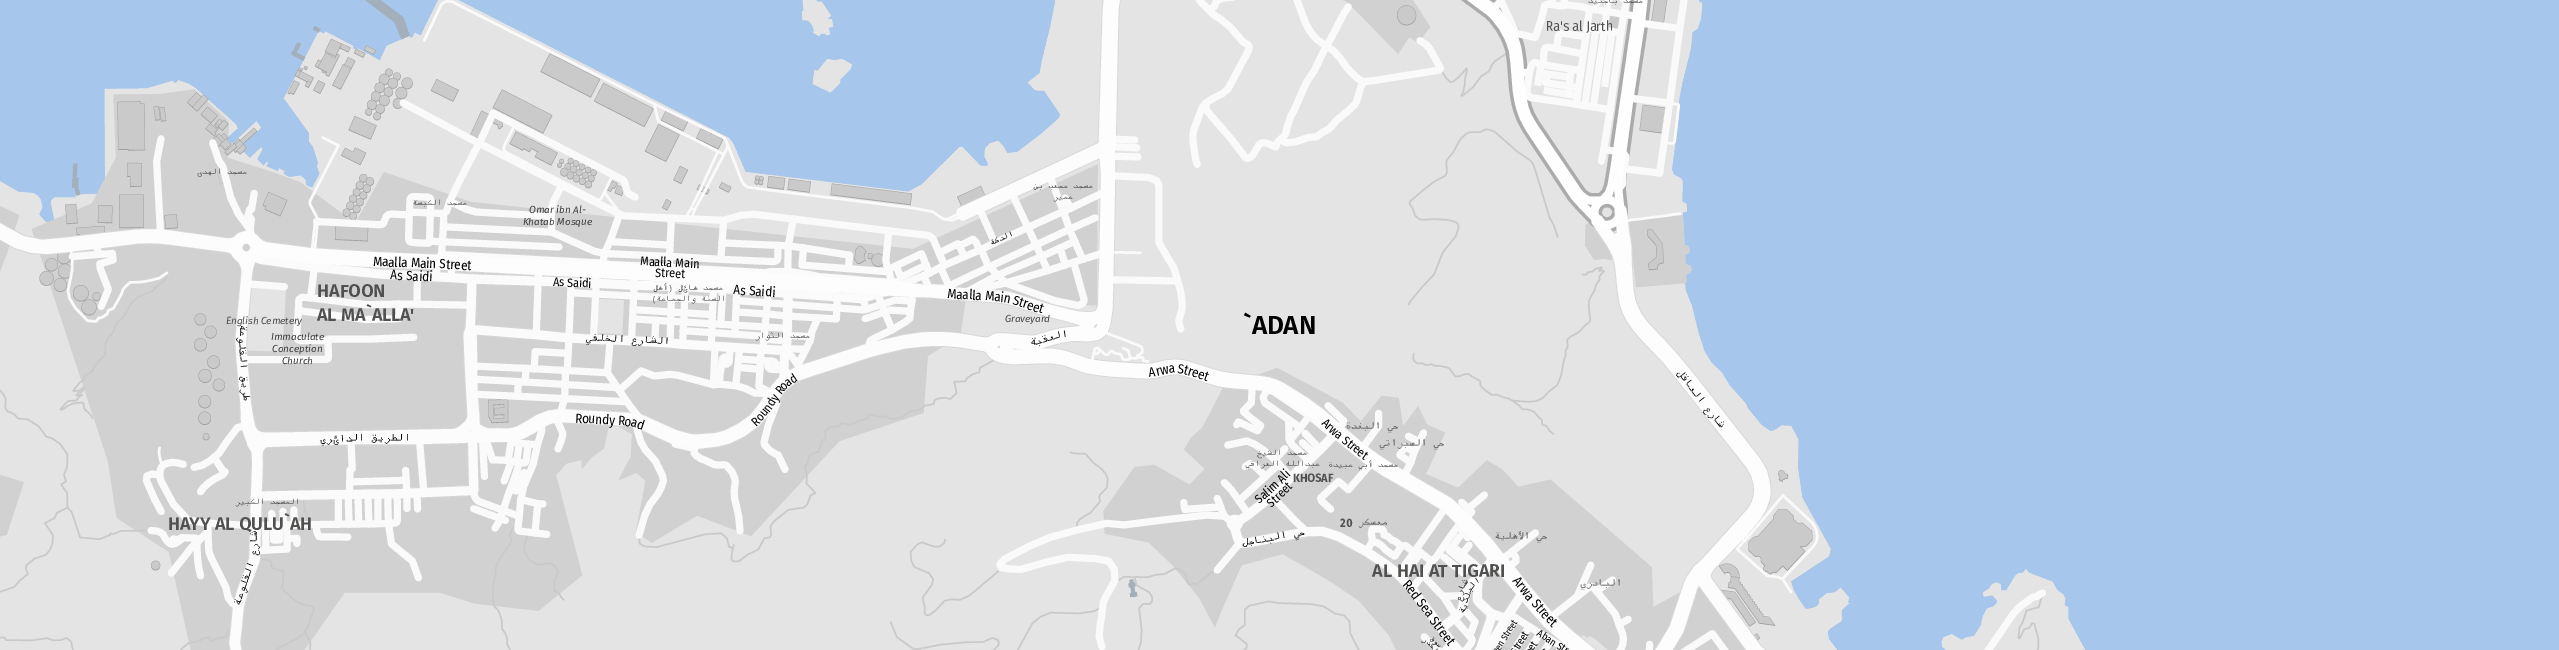 Stadtplan Aden zum Downloaden.